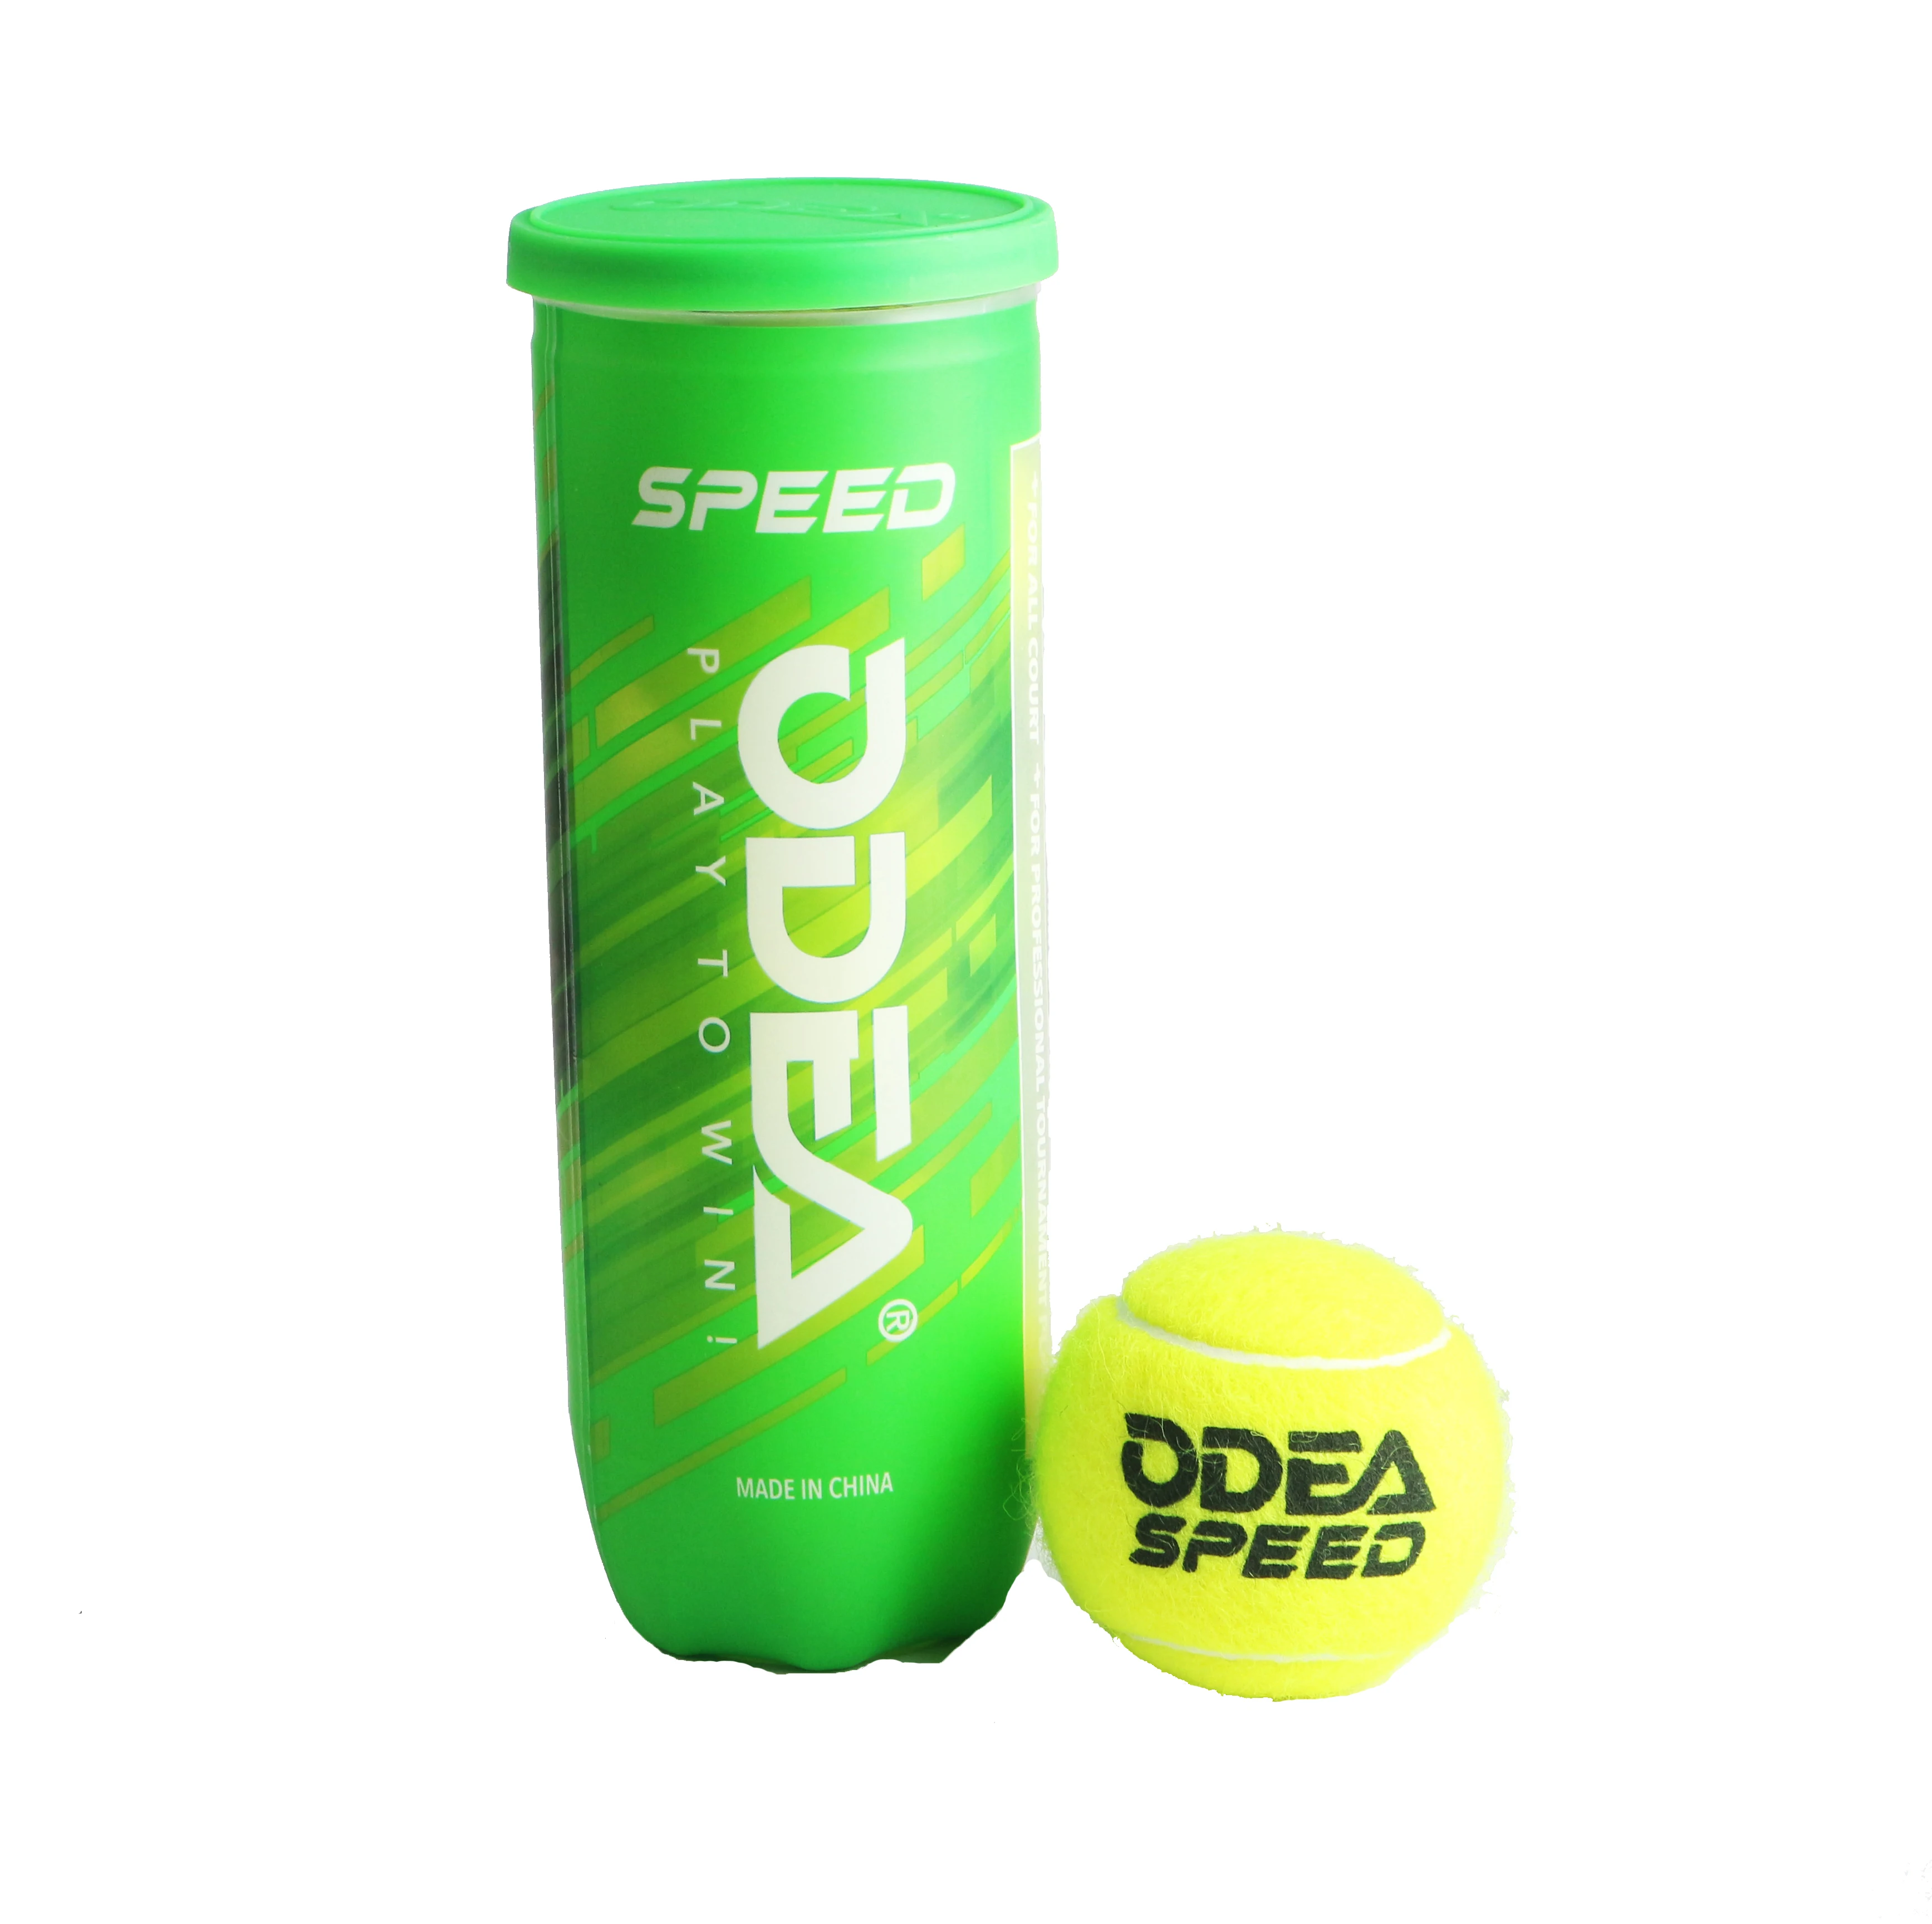 Производитель Odear, высококачественный турнирный теннисный мяч в тубах или банках (60635257948)